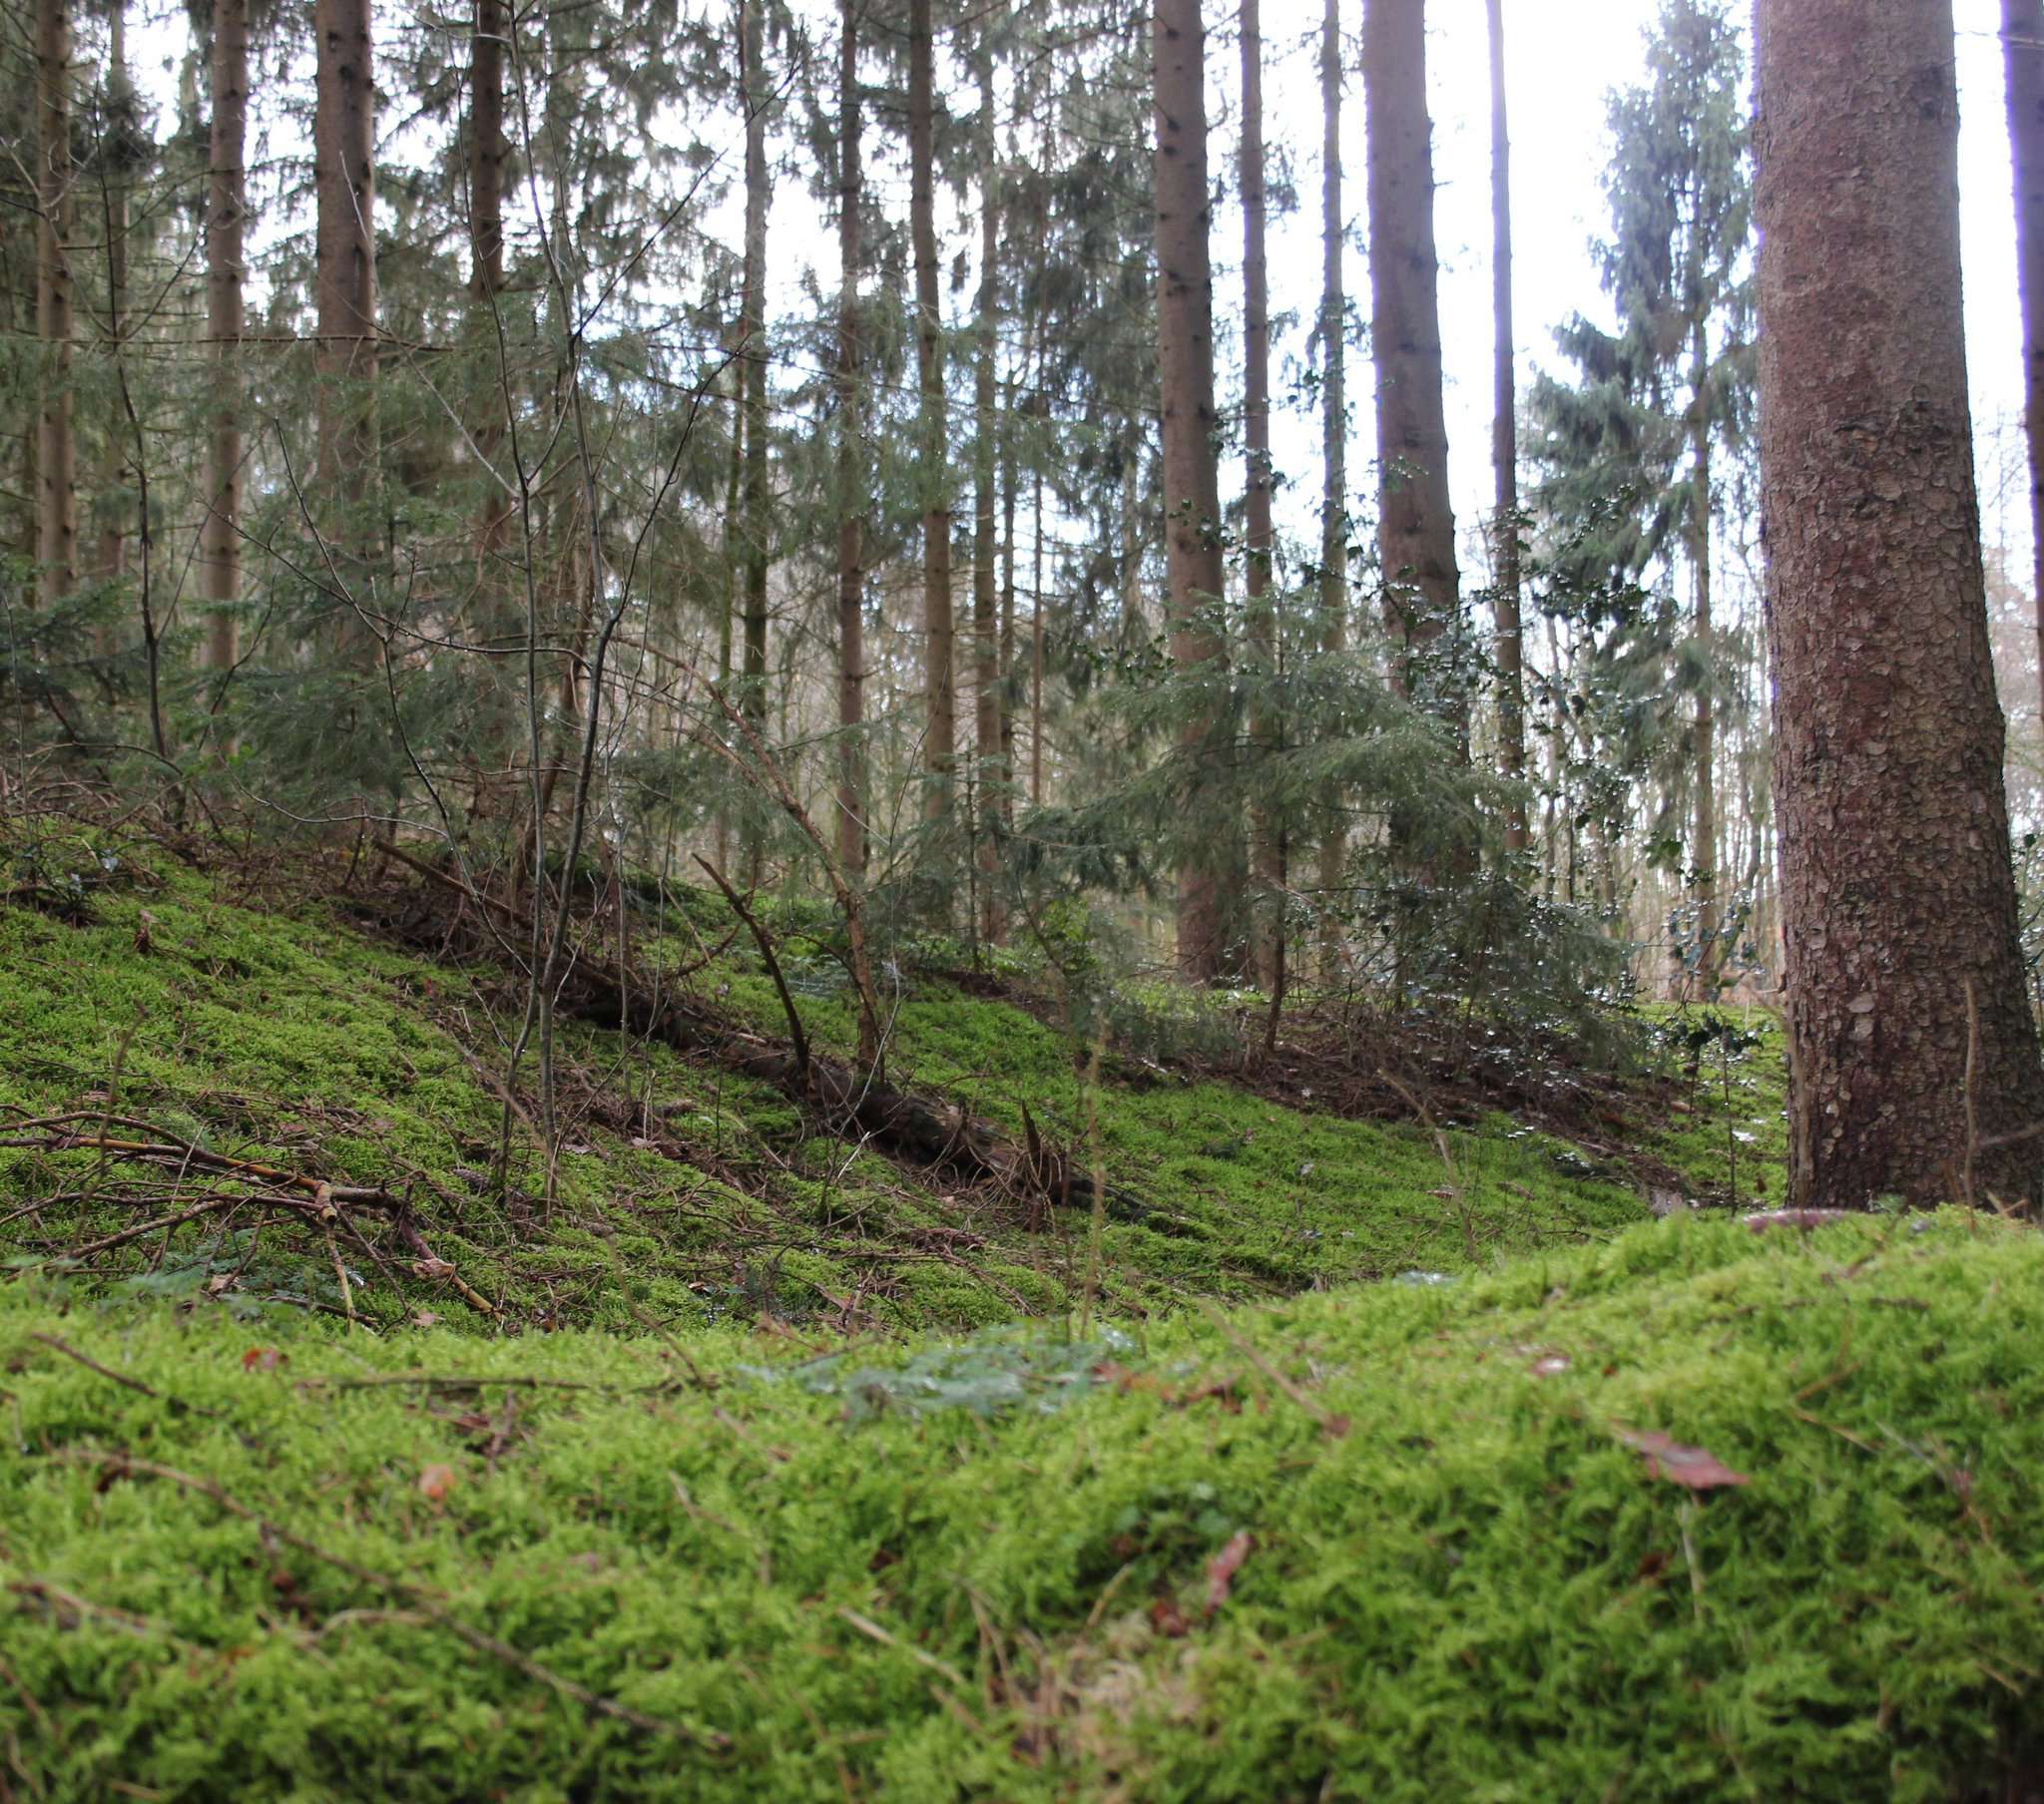 In der Quelkhorner Surheide soll ein Waldfriedhof entstehen. Der Gemeinderat unterstützt das Ansinnen. Es gibt aber auch kritische Stimmen. Foto: Björn Blaak